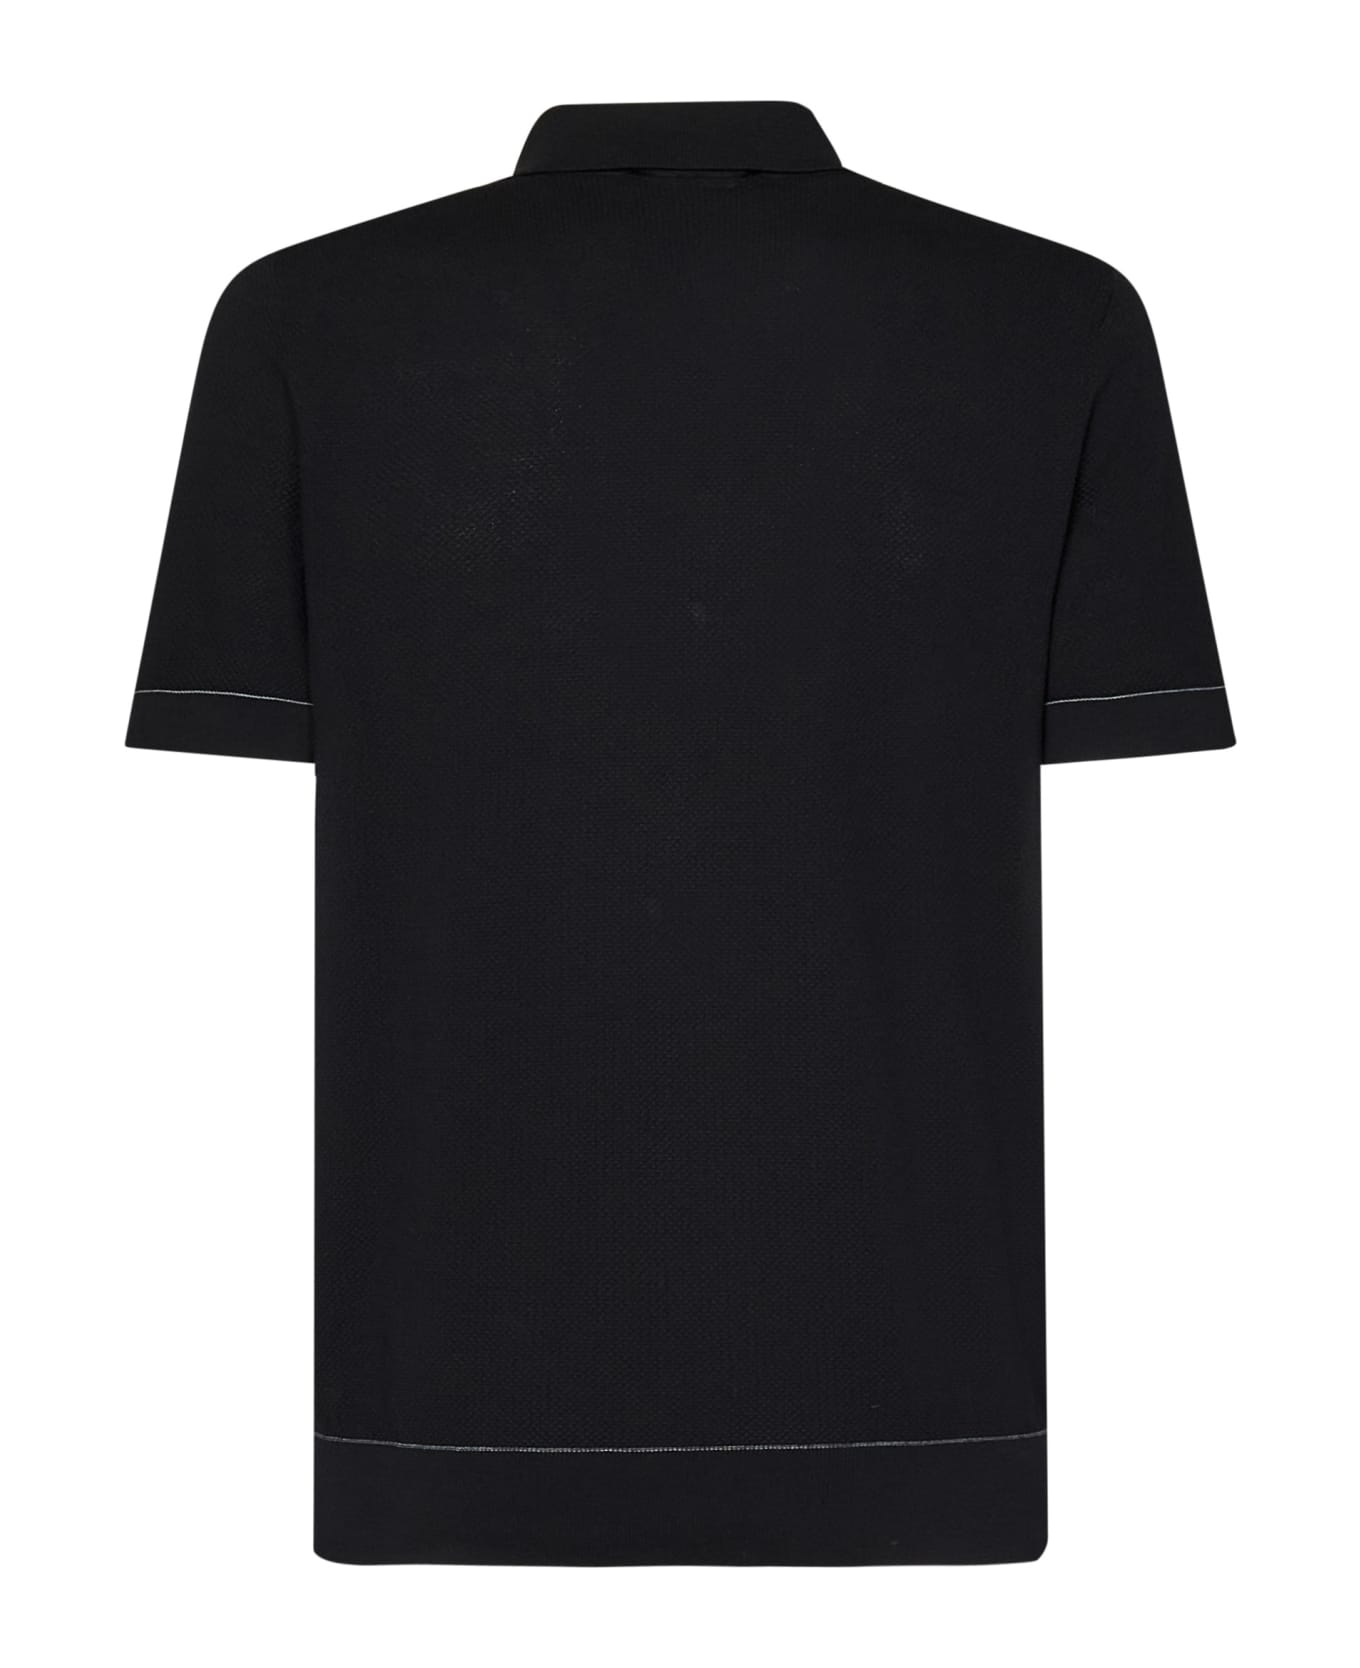 Brioni Polo Shirt - Black